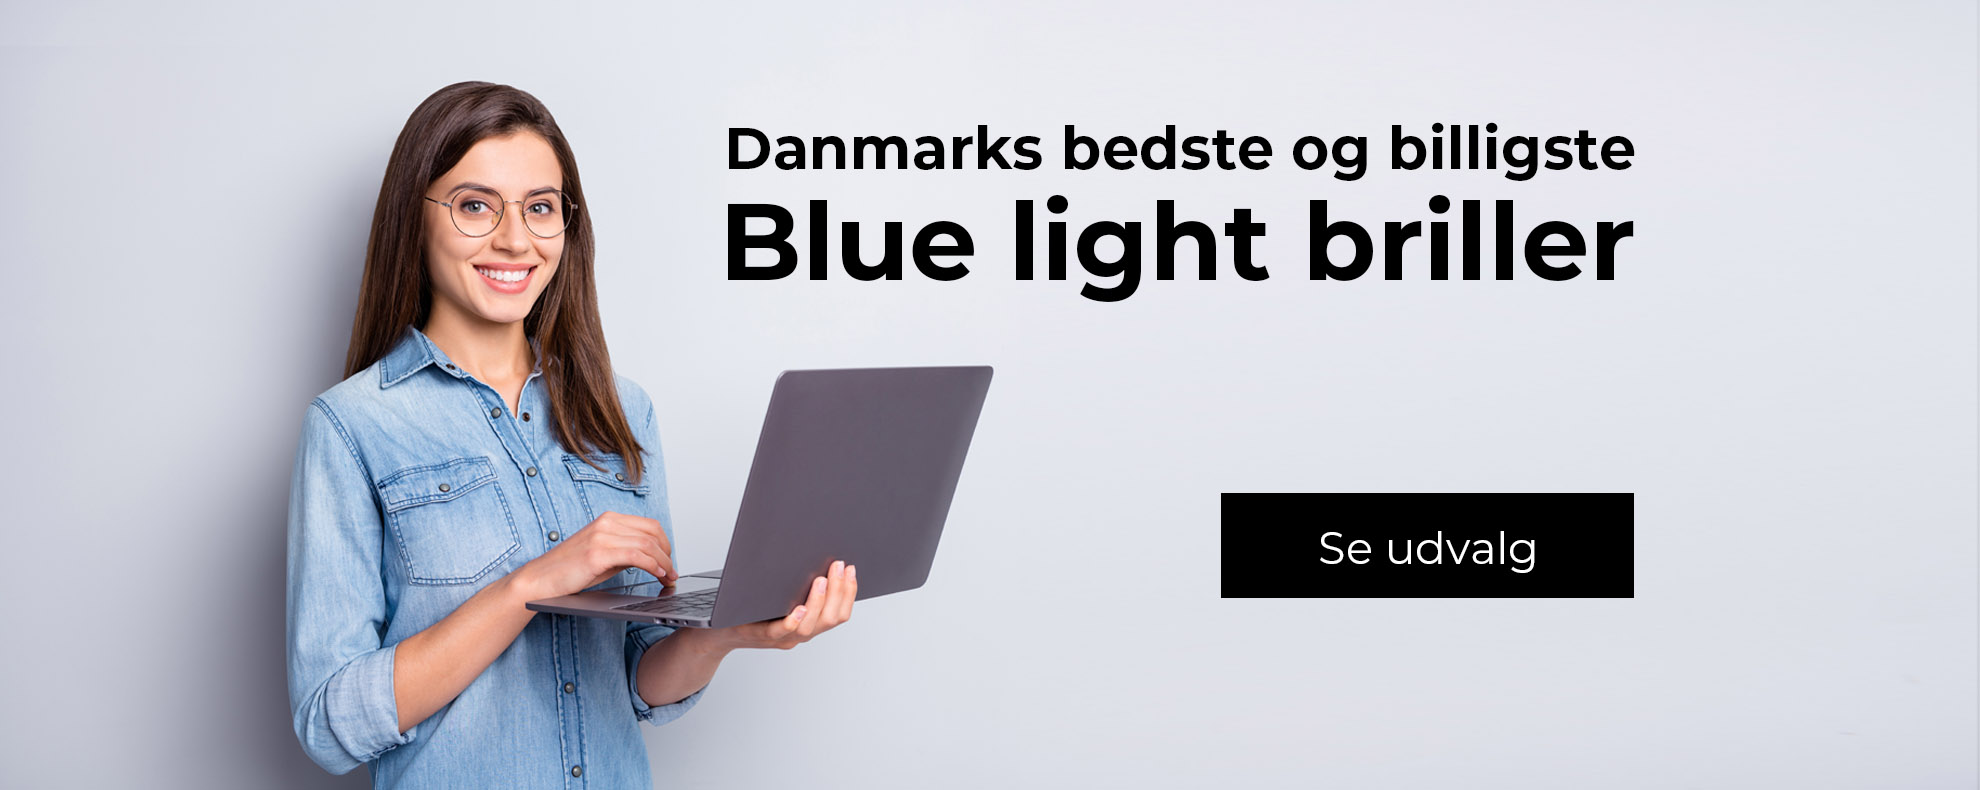 Danmarks bedste og billigste blue light briller